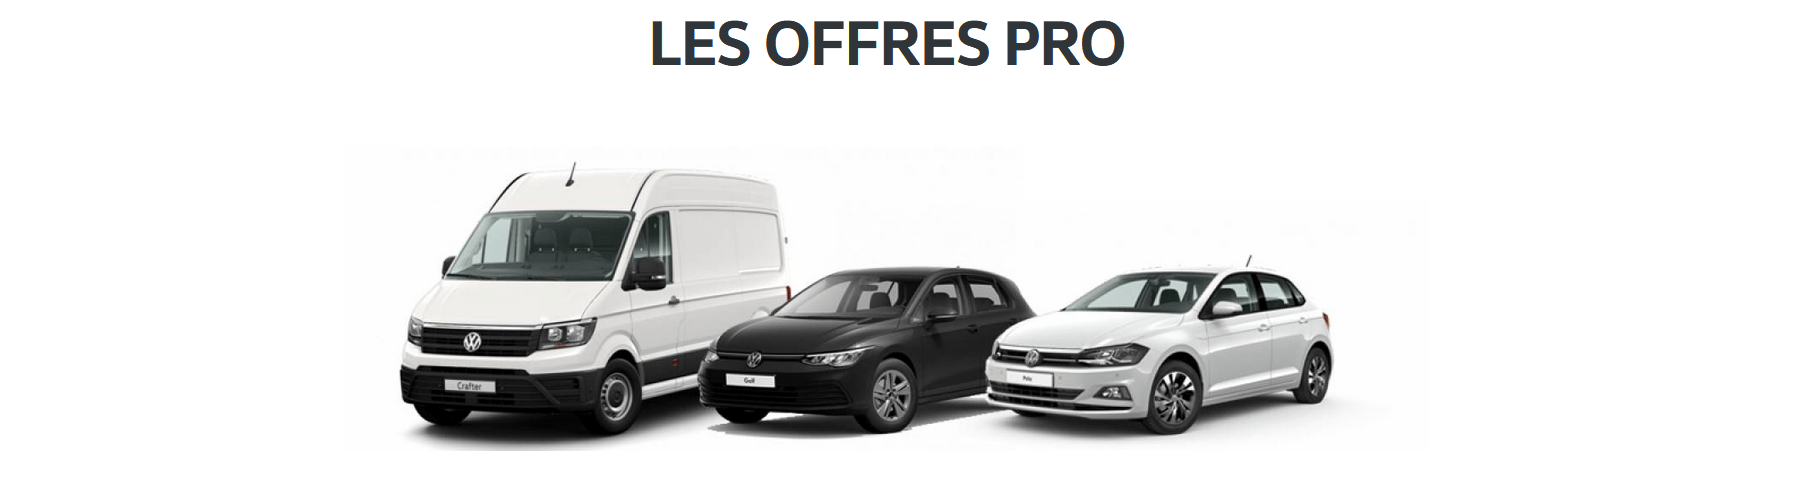 Volkswagen Utilitaires Dunkerque AUTO-EXPO - Les offres exclusives chez votre partenaire VGRF Fleet Hauts-de-France